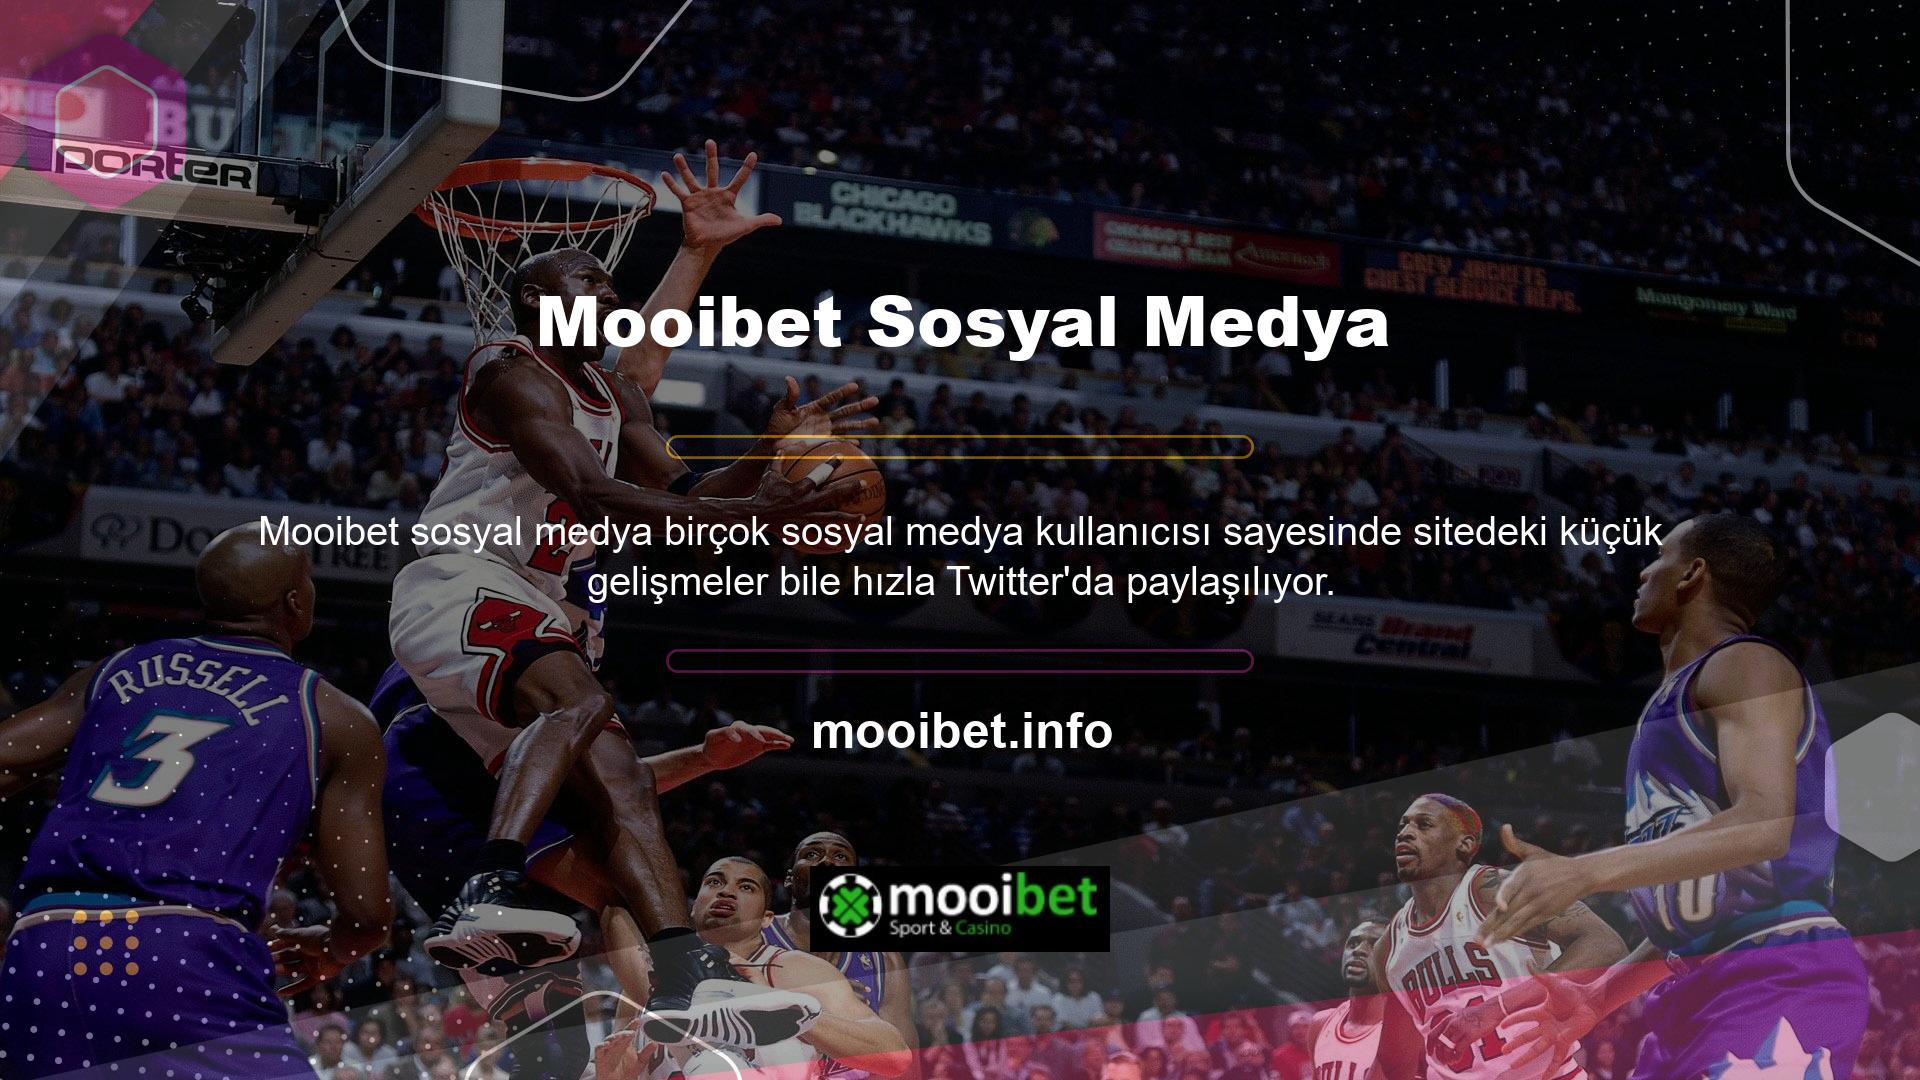 Etkinliği Mooibet Twitter hesabından takip edin